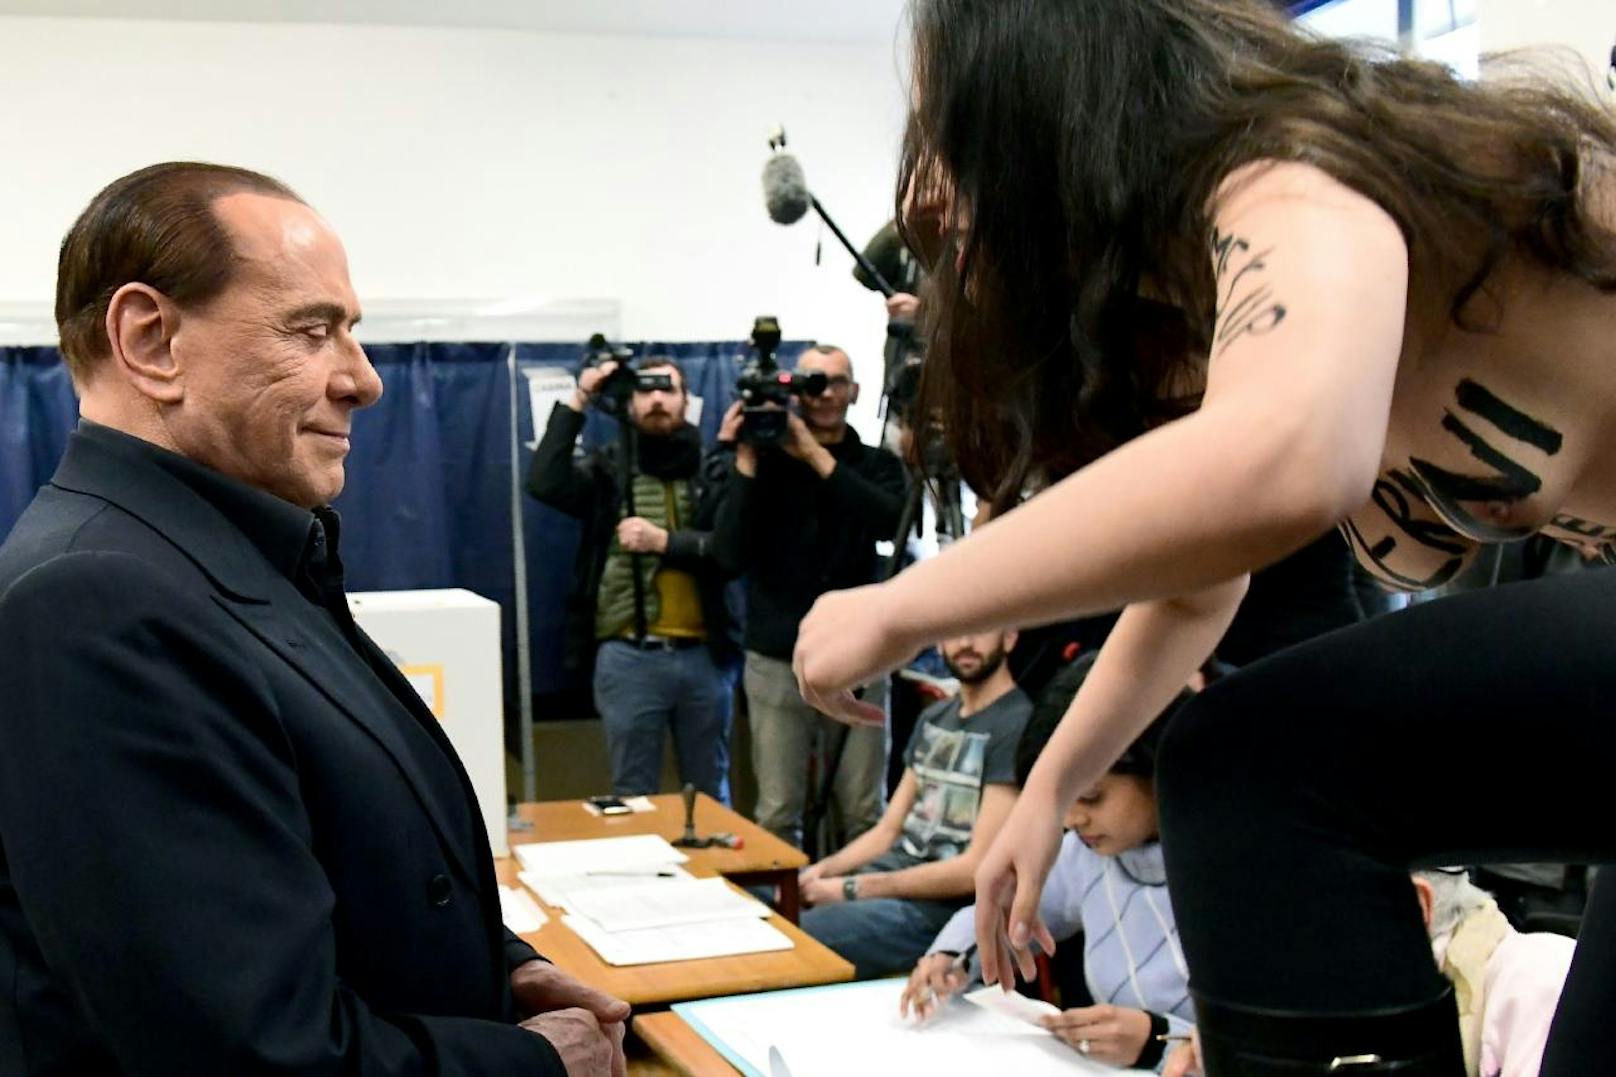 Bei der Stimmabgabe von Silvio Berlusconi, stellte sich ihm ein barbusige Femen-Aktivistin. Der Ex-Premier grinste sein berühmtes Grinsen und wandte sich dann ab.